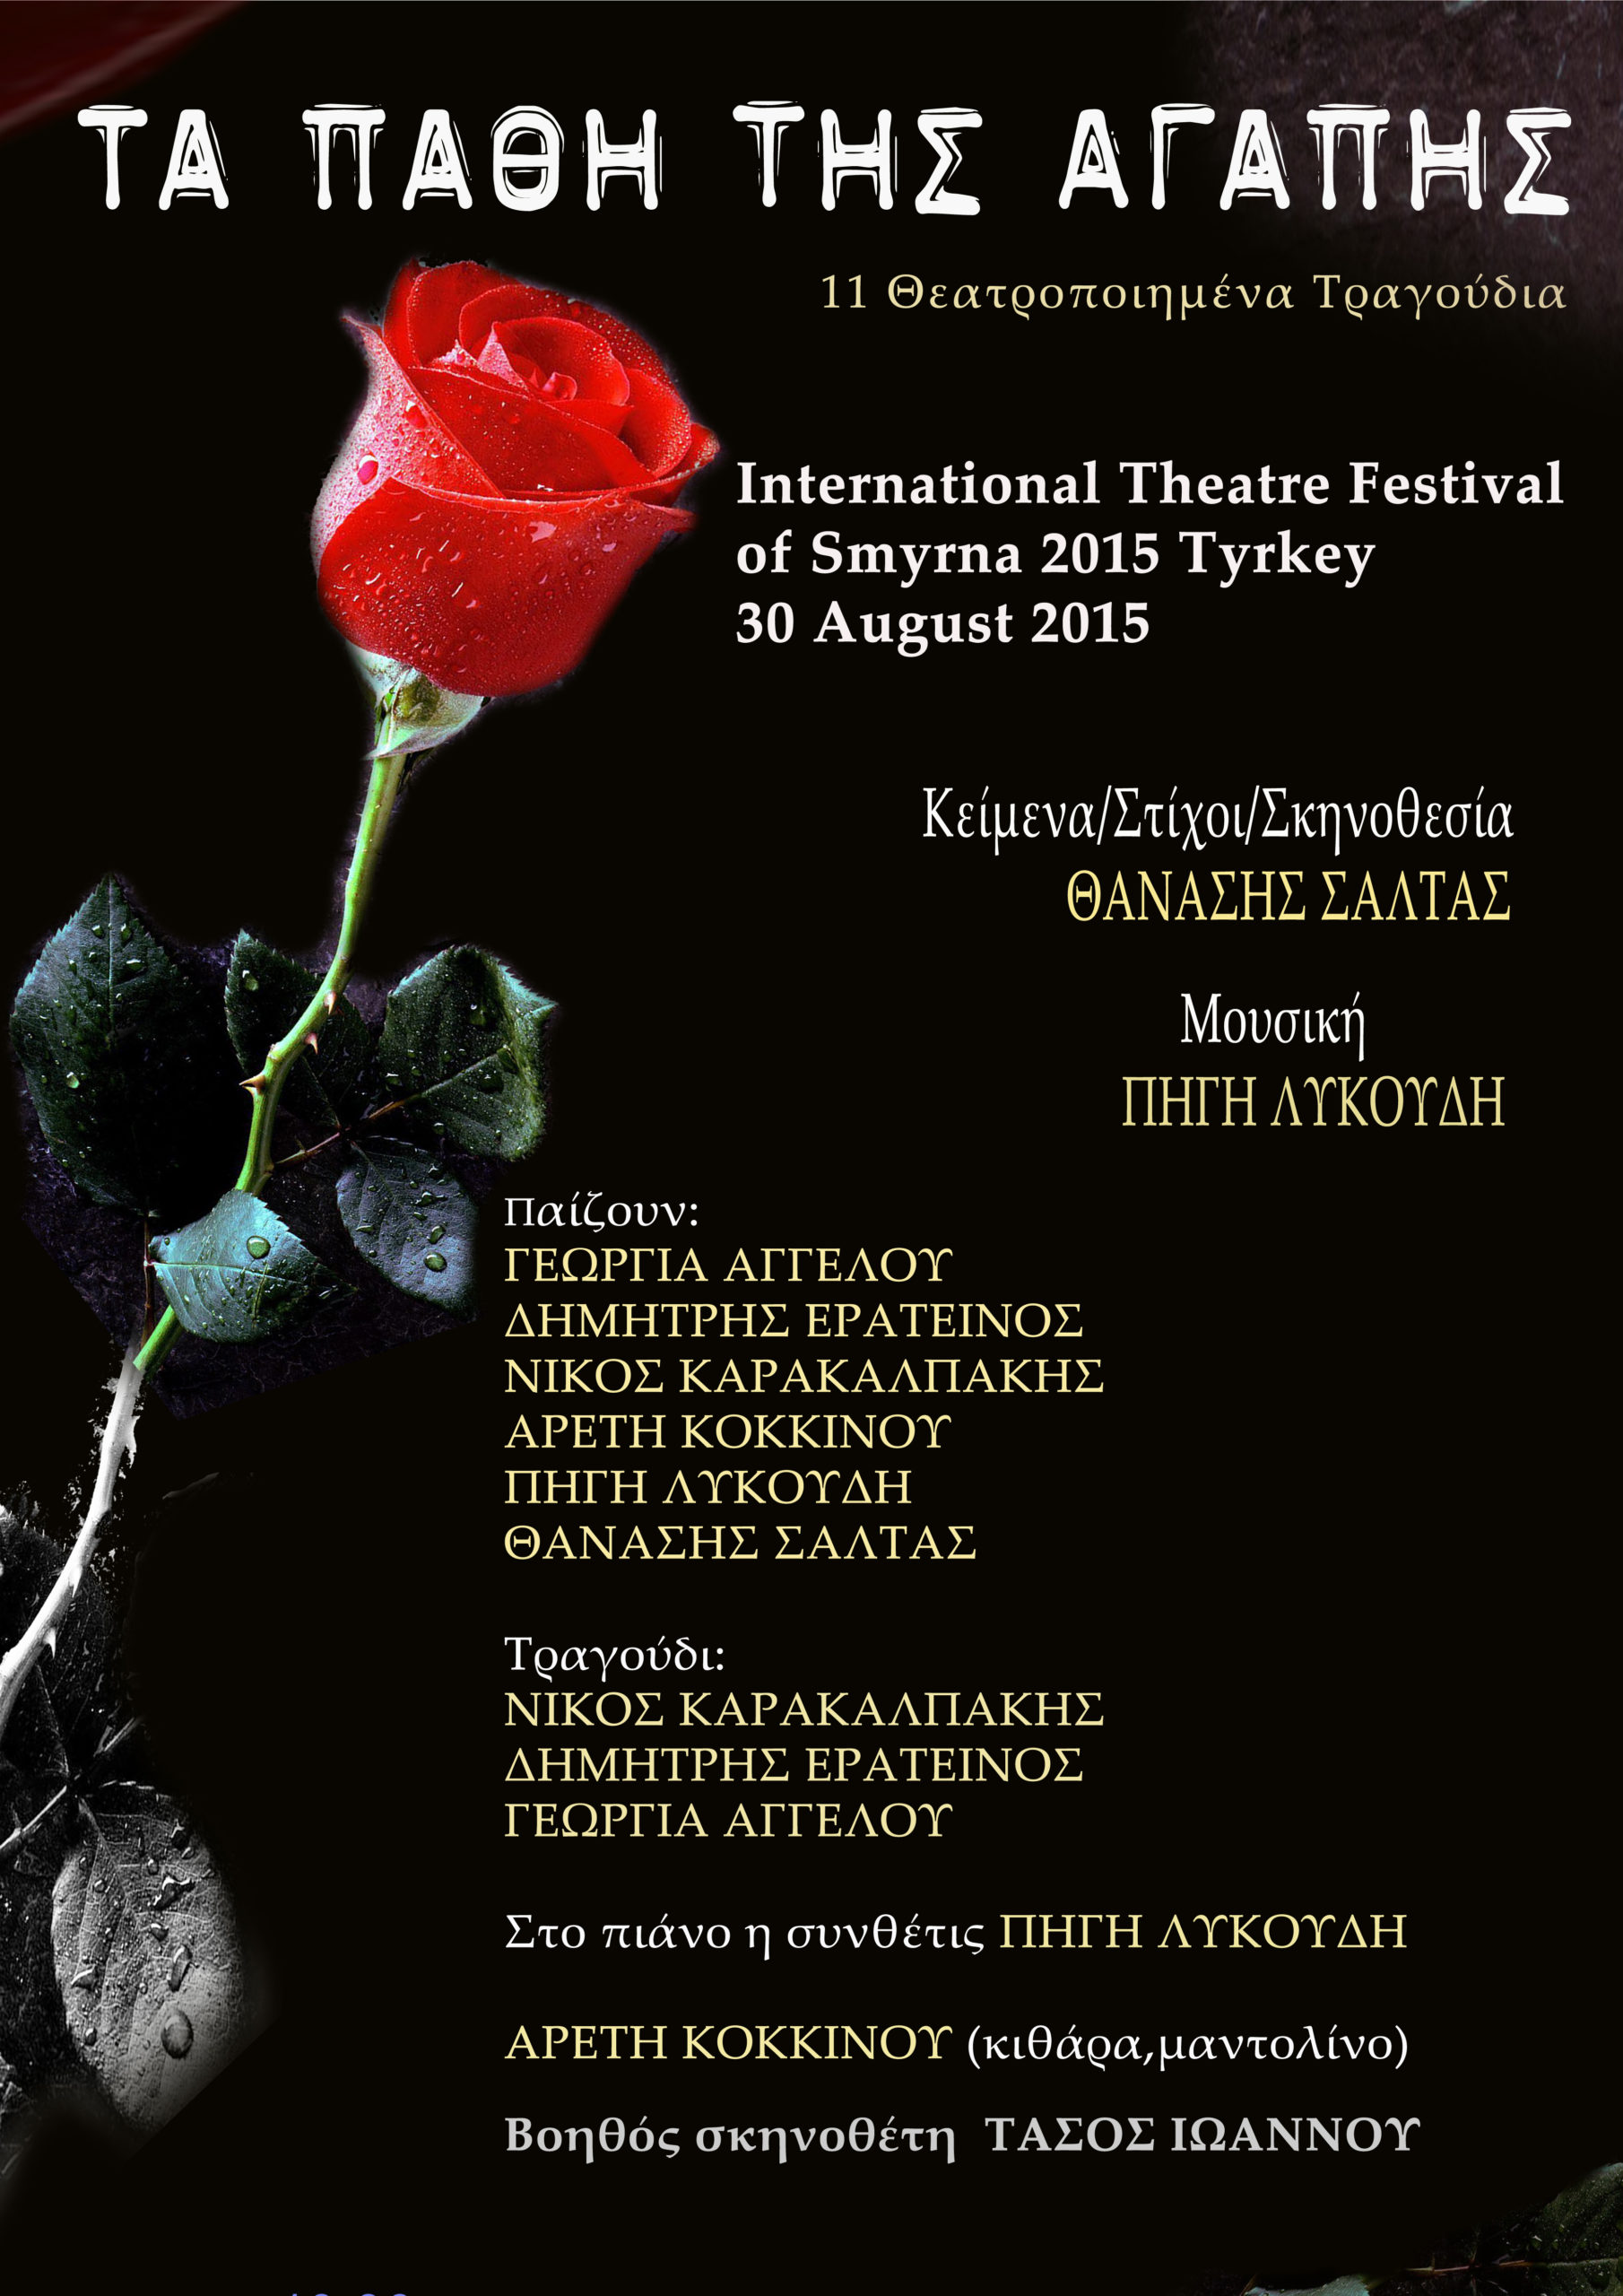 Τα “Πάθη της Αγάπης” στο Διεθνές Φεστιβάλ Θεάτρου Σμύρνης